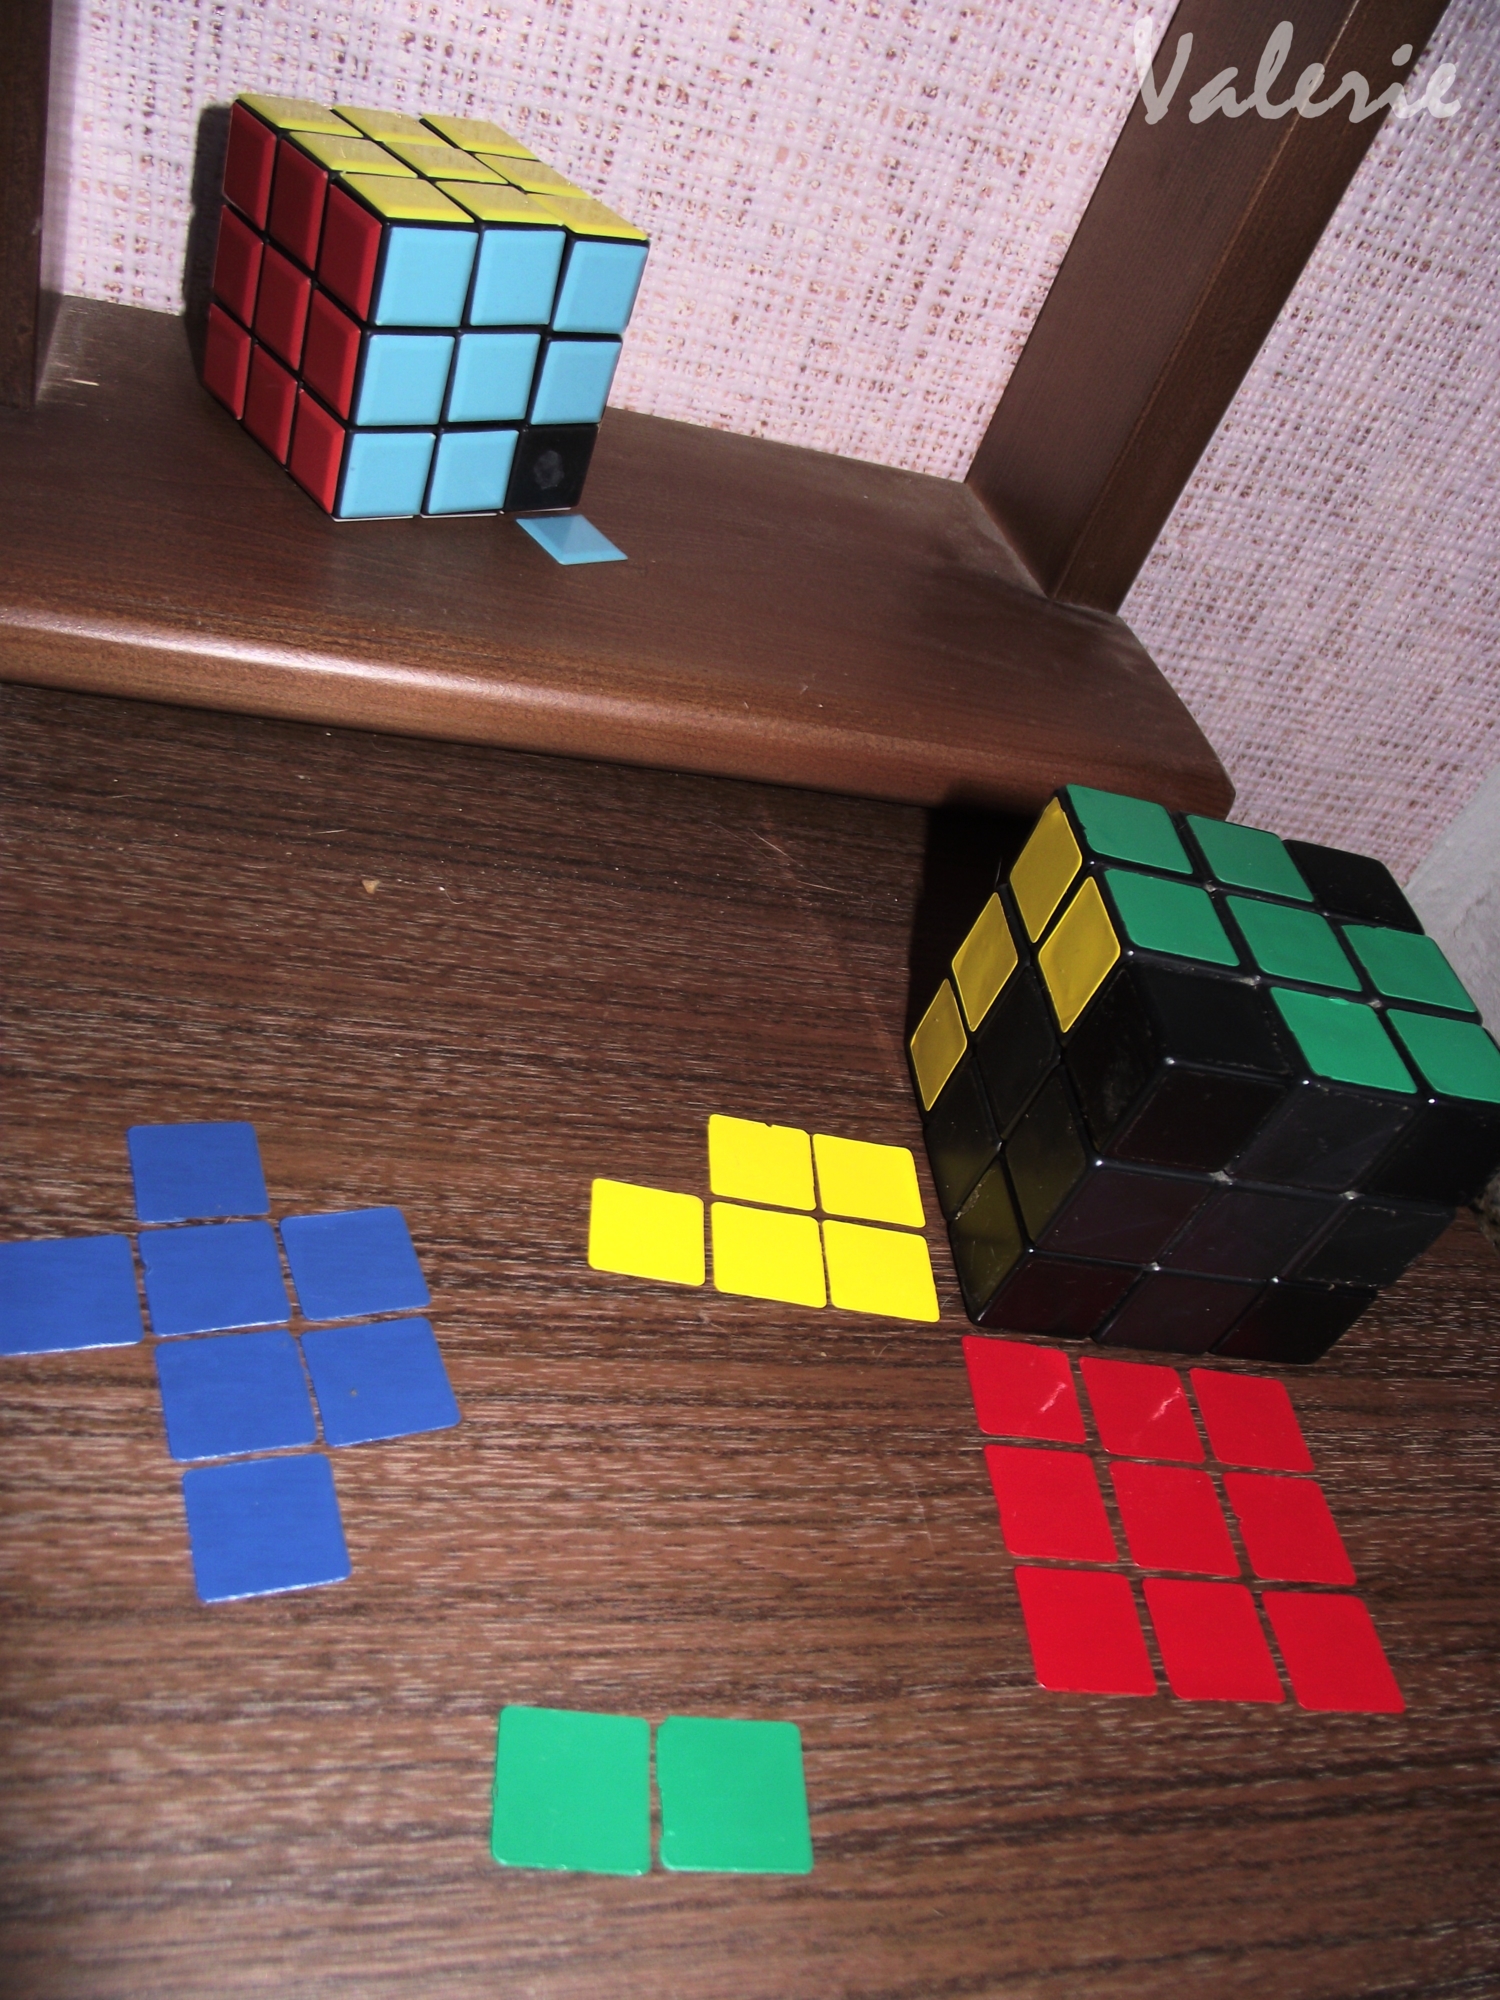 Кубики-рубики